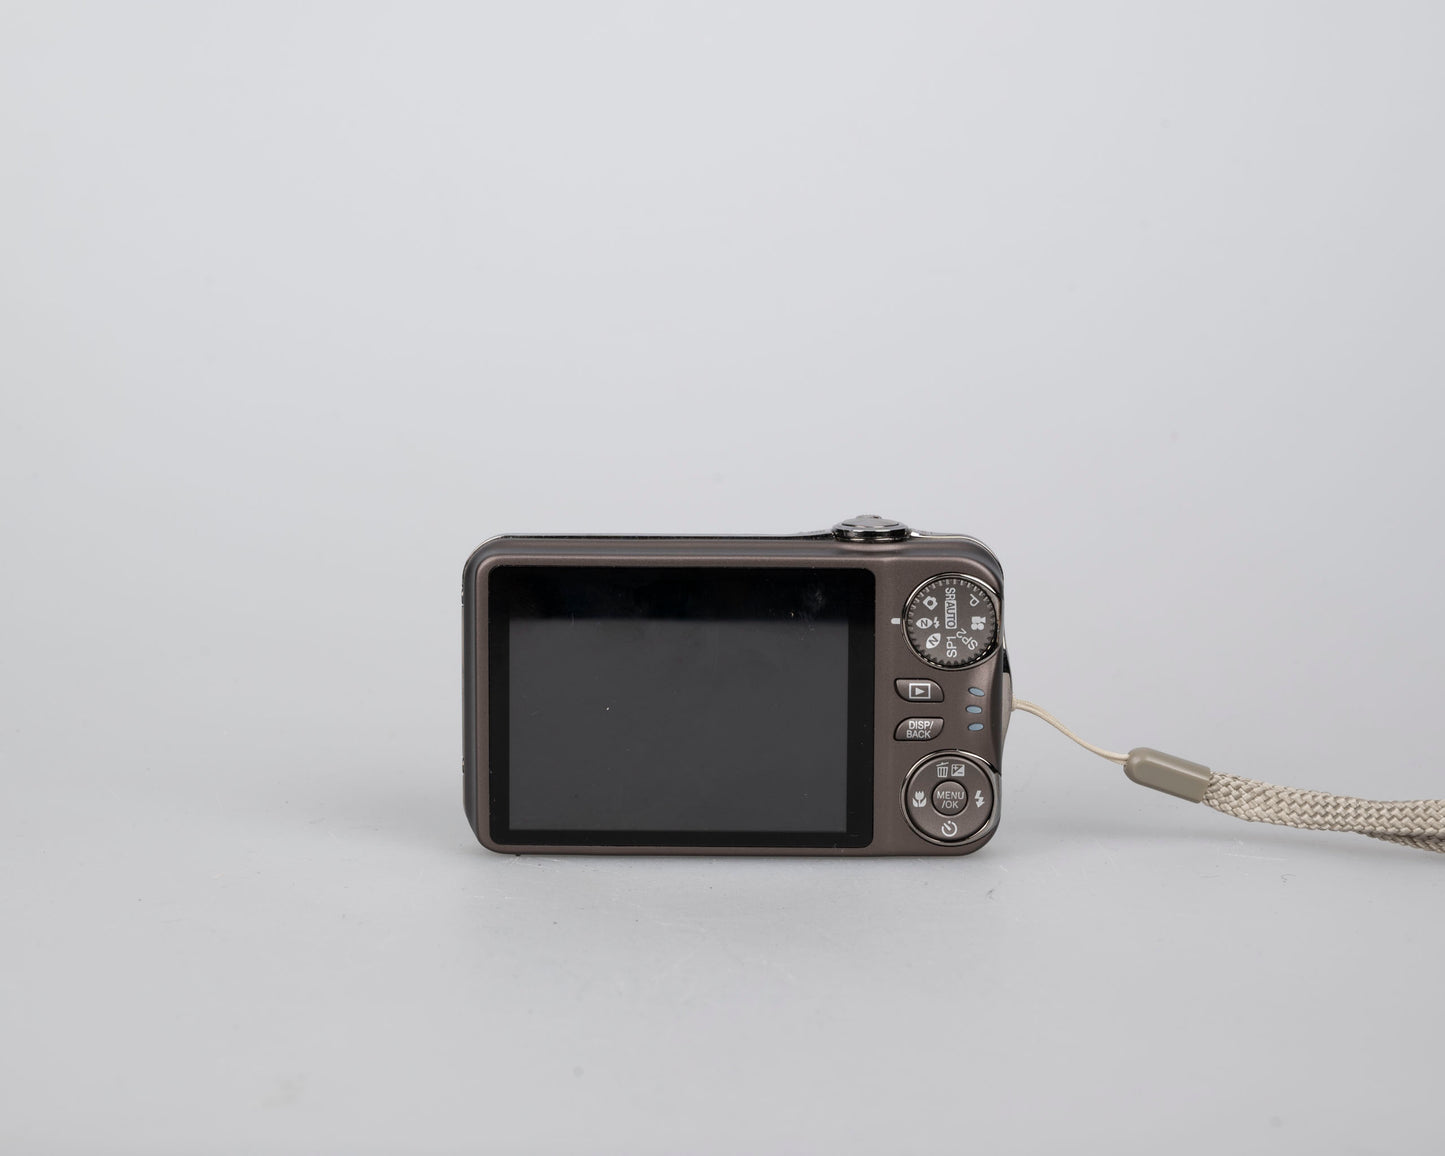 Appareil photo numérique Fujifilm Finepix T300 avec capteur CCD 14 MP avec boîtier + batterie + chargeur + manuel